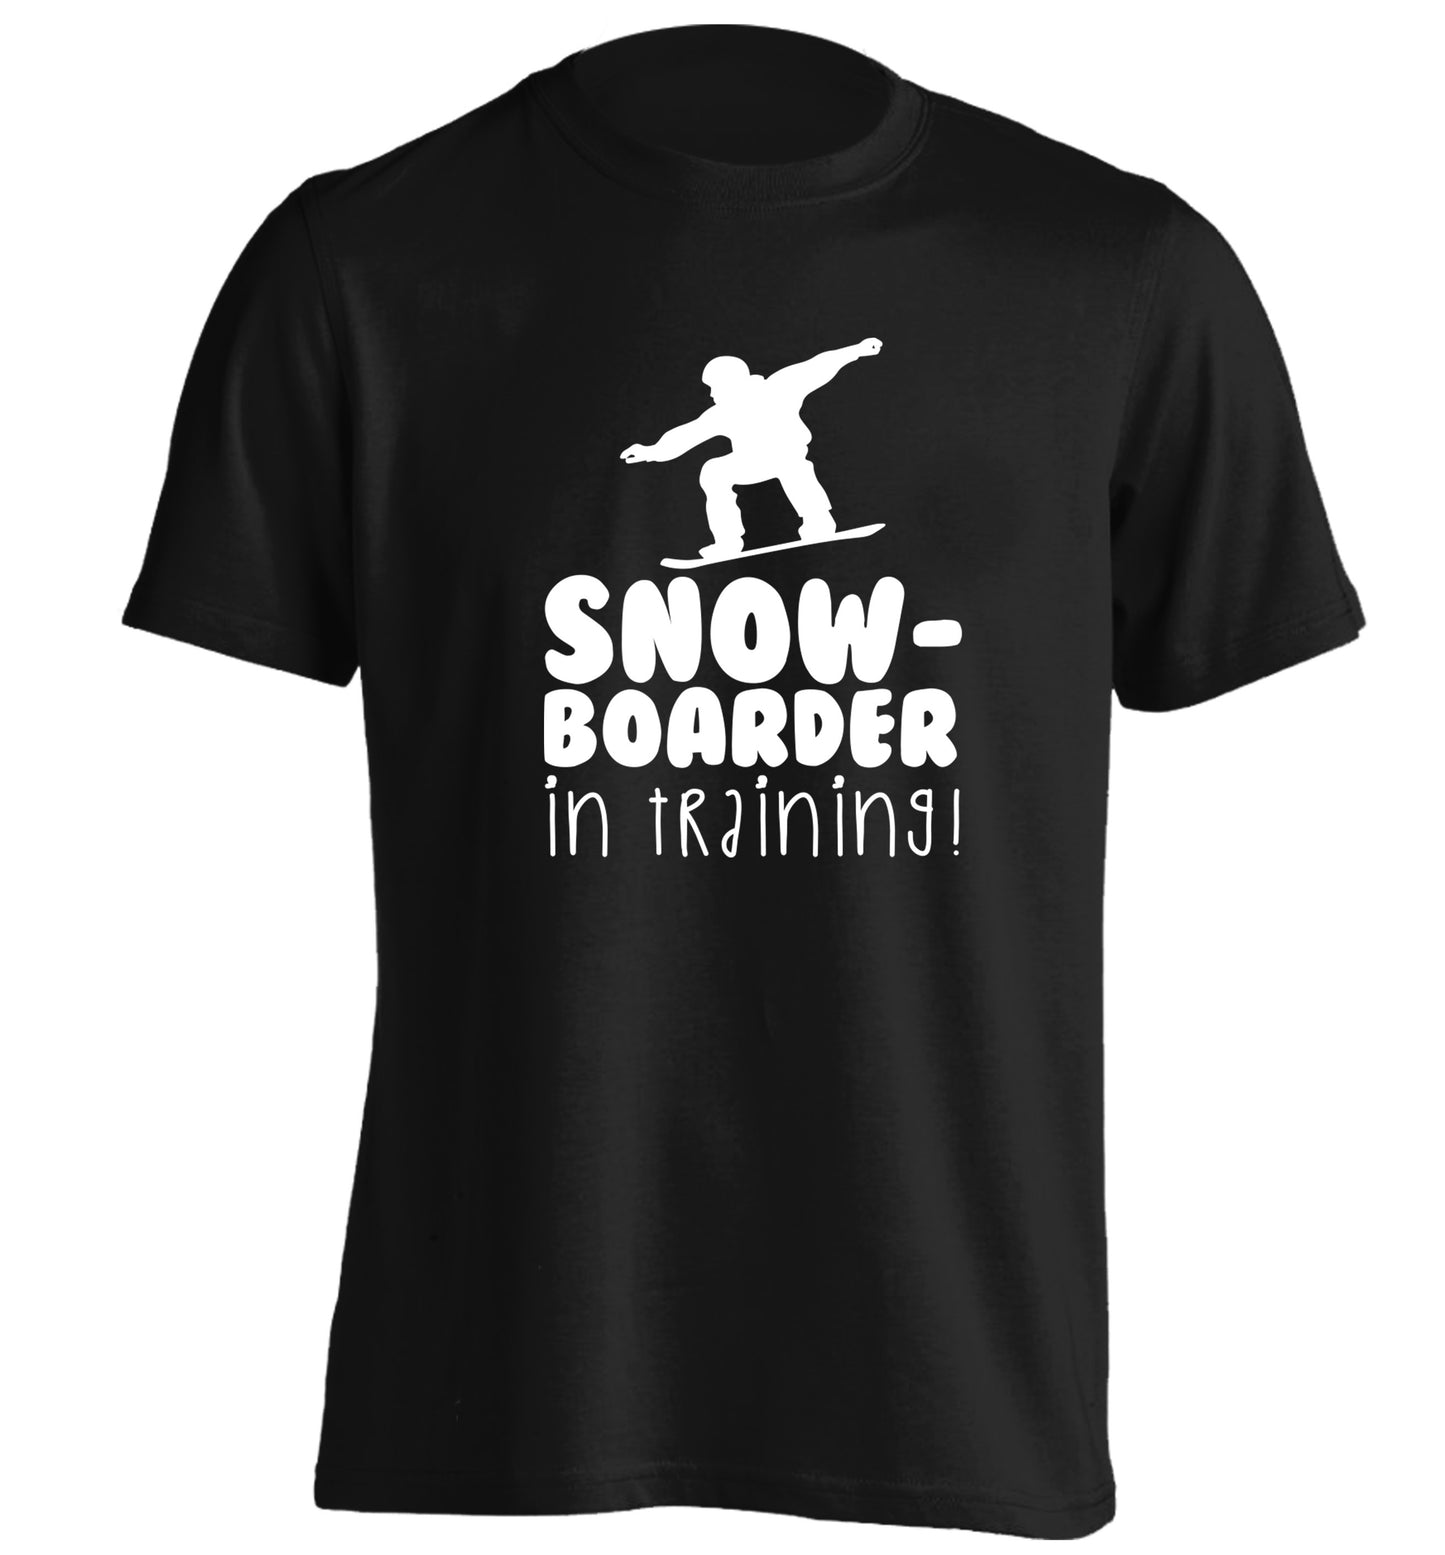 Snowboarder in training adults unisex black Tshirt 2XL